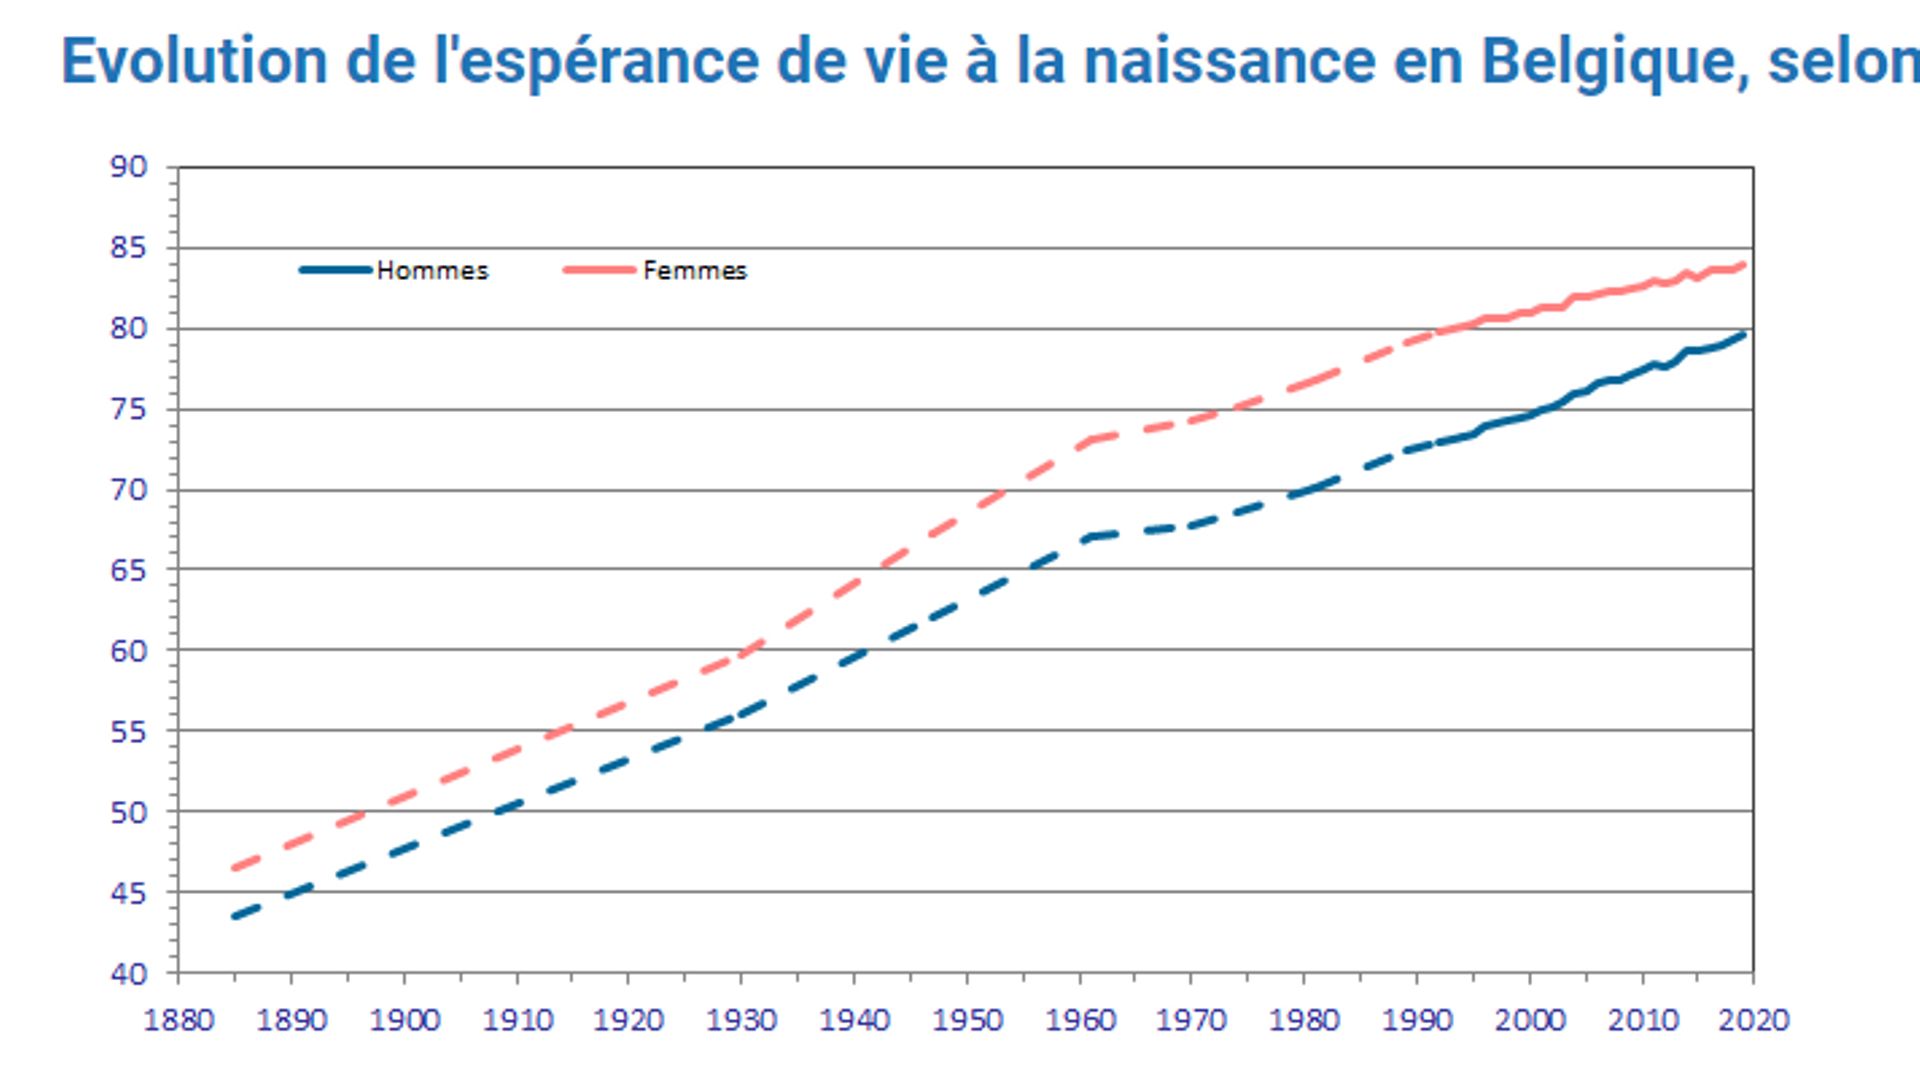 https://statbel.fgov.be/fr/themes/population/mortalite-et-esperance-de-vie/tables-de-mortalite-et-esperance-de-vie#figures